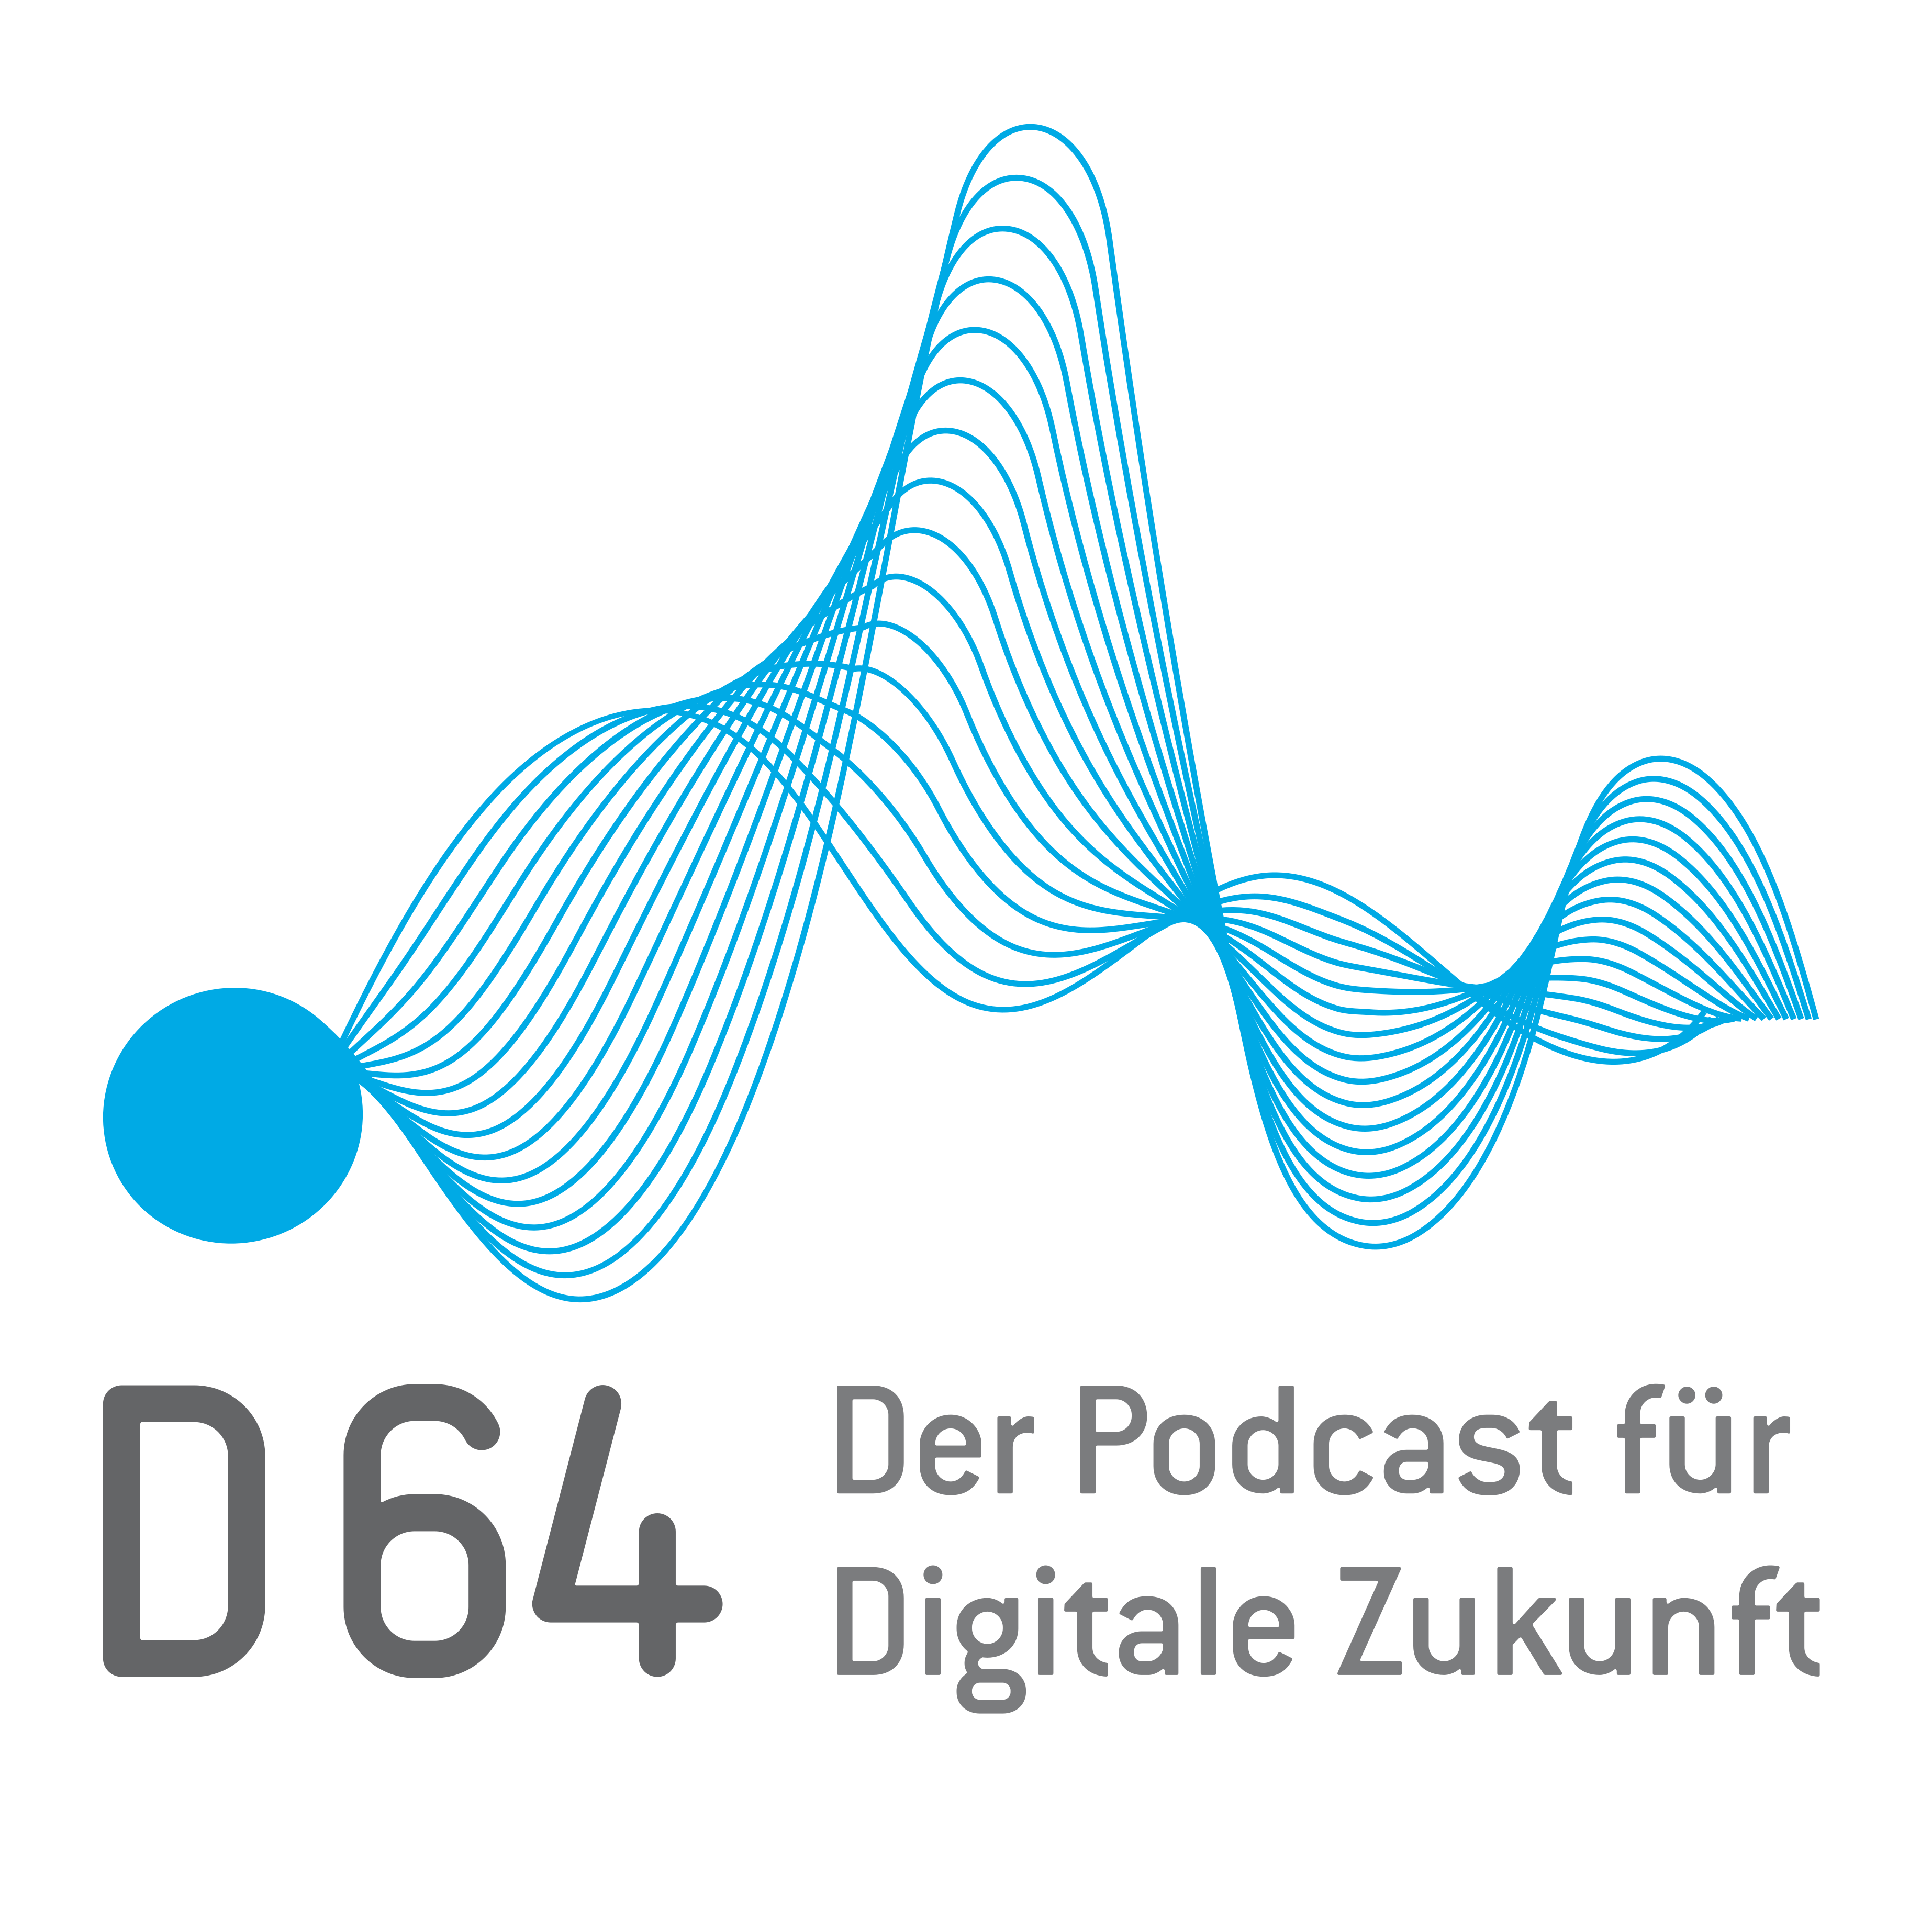 D64 – Der Podcast für Digitale Zukunft